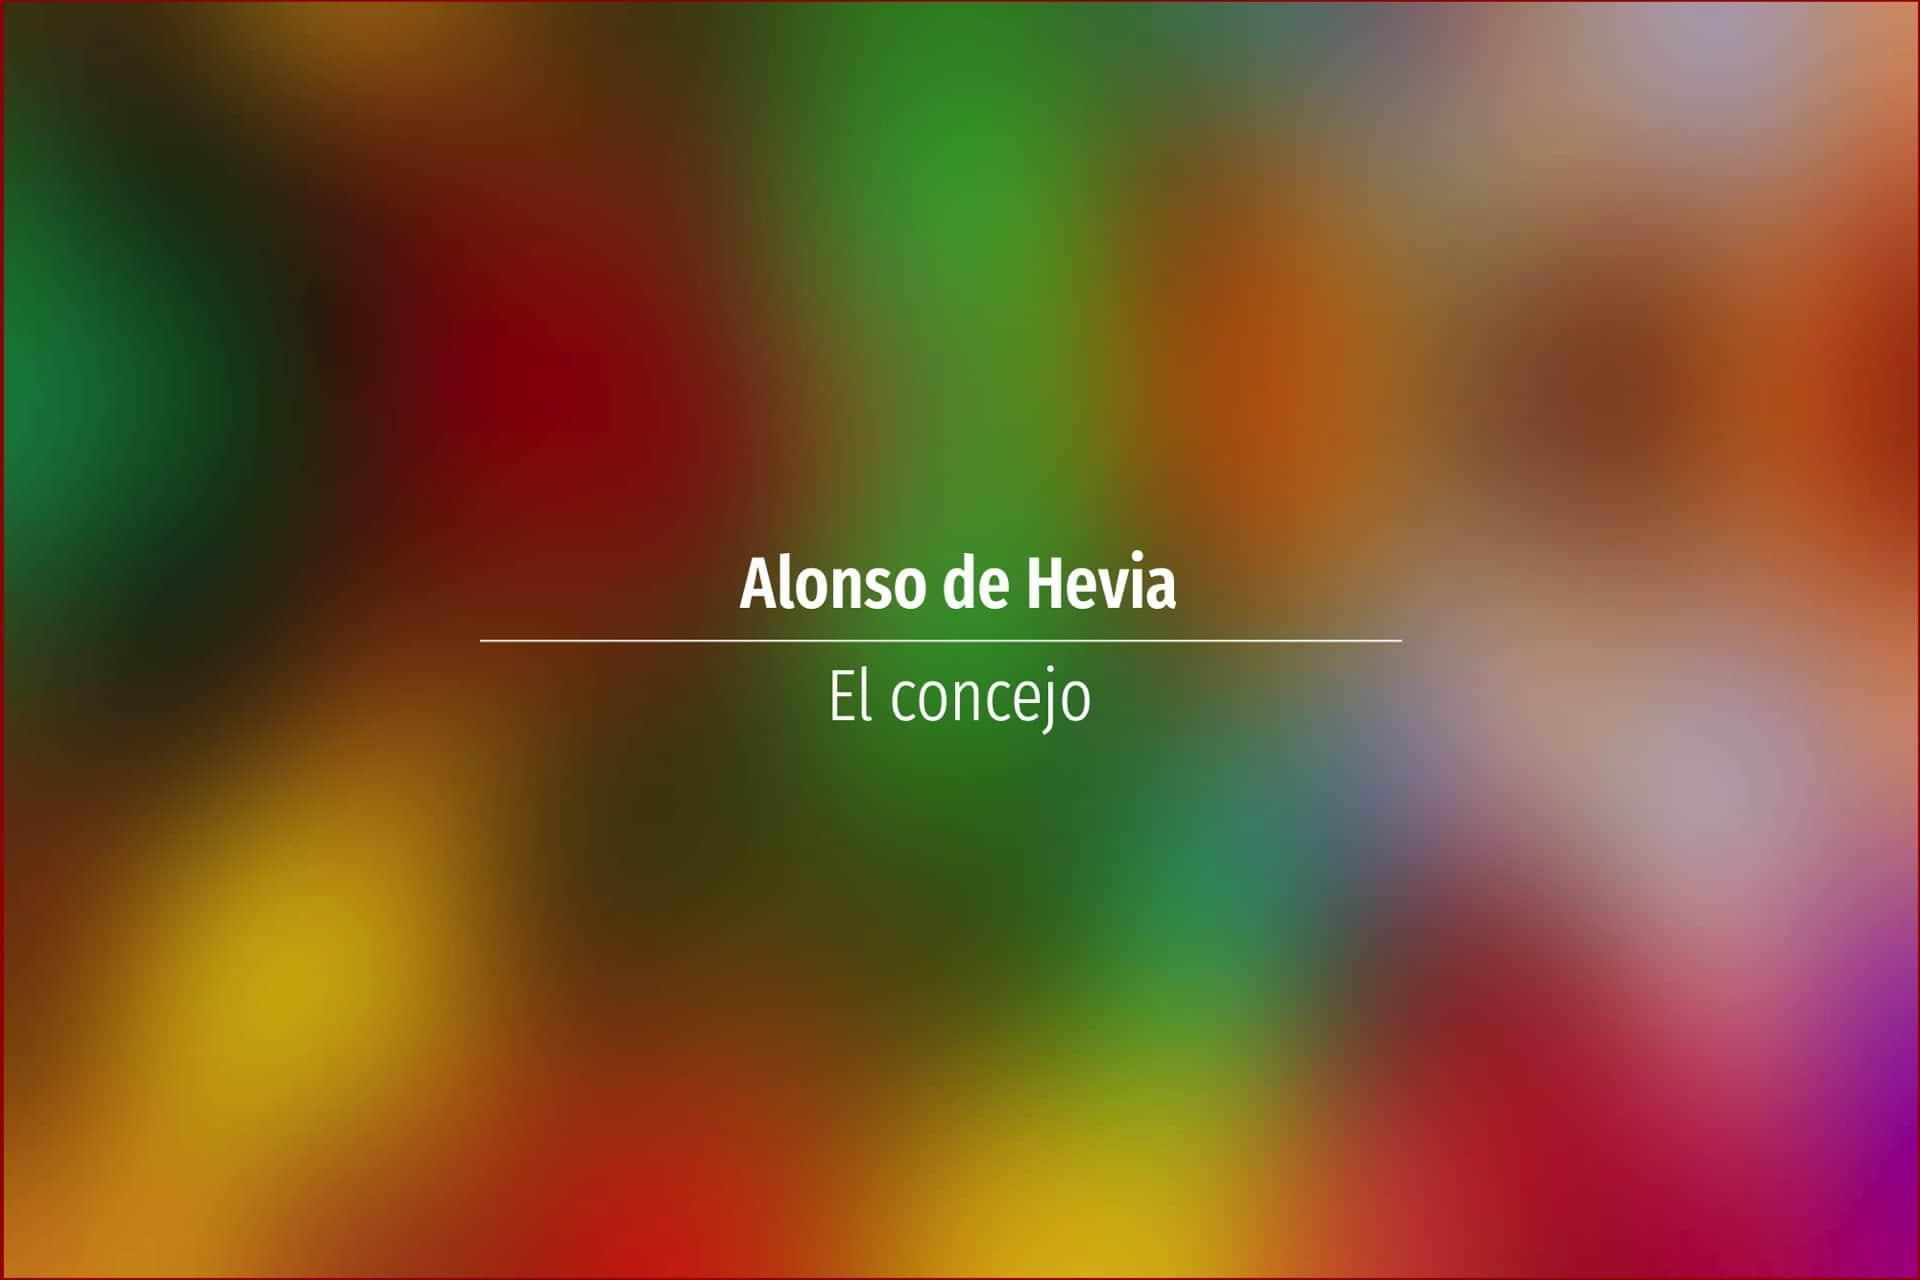 Alonso de Hevia